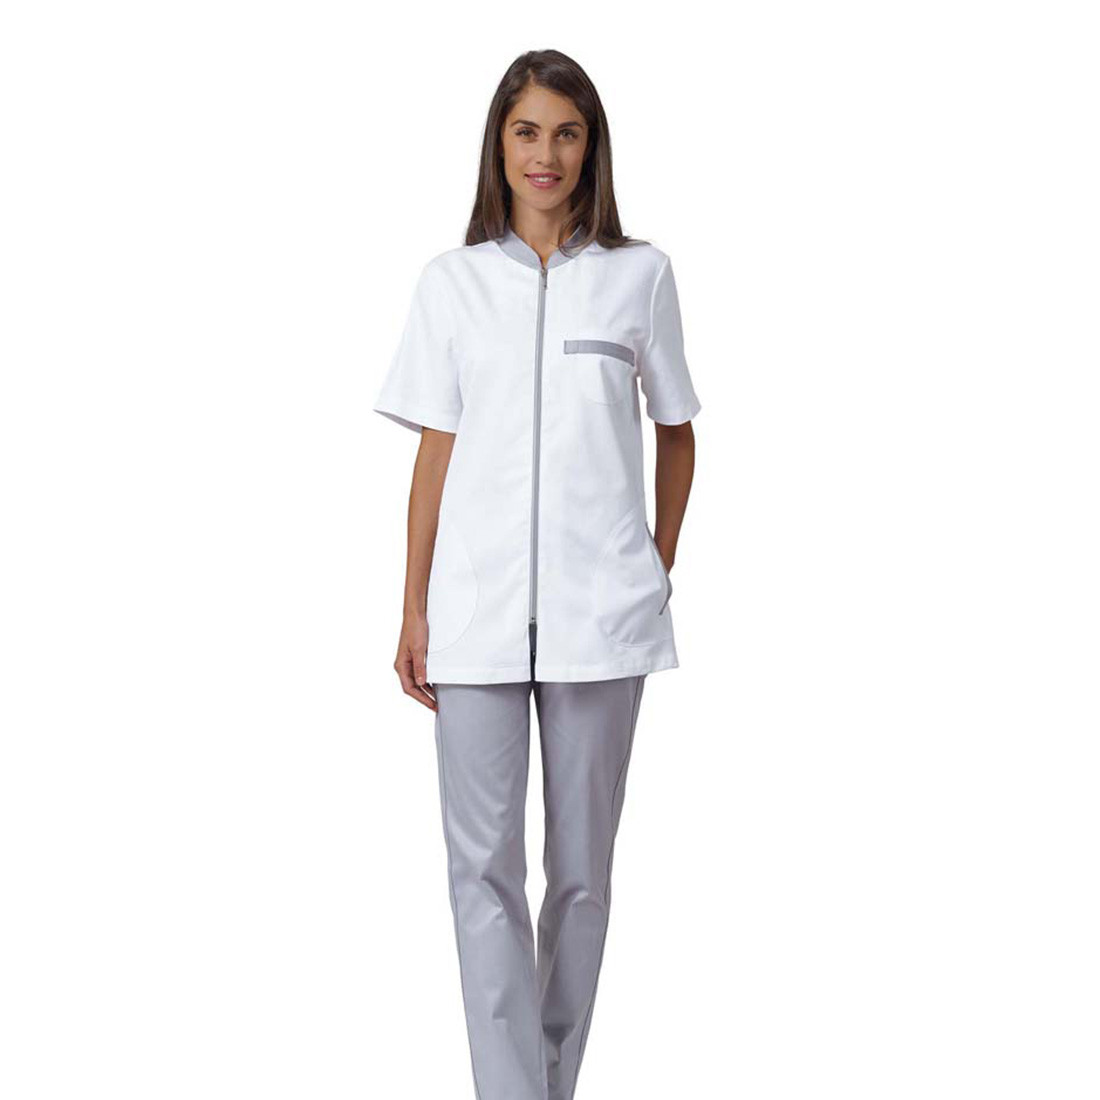 ELLIE medical tunic - Safetywear